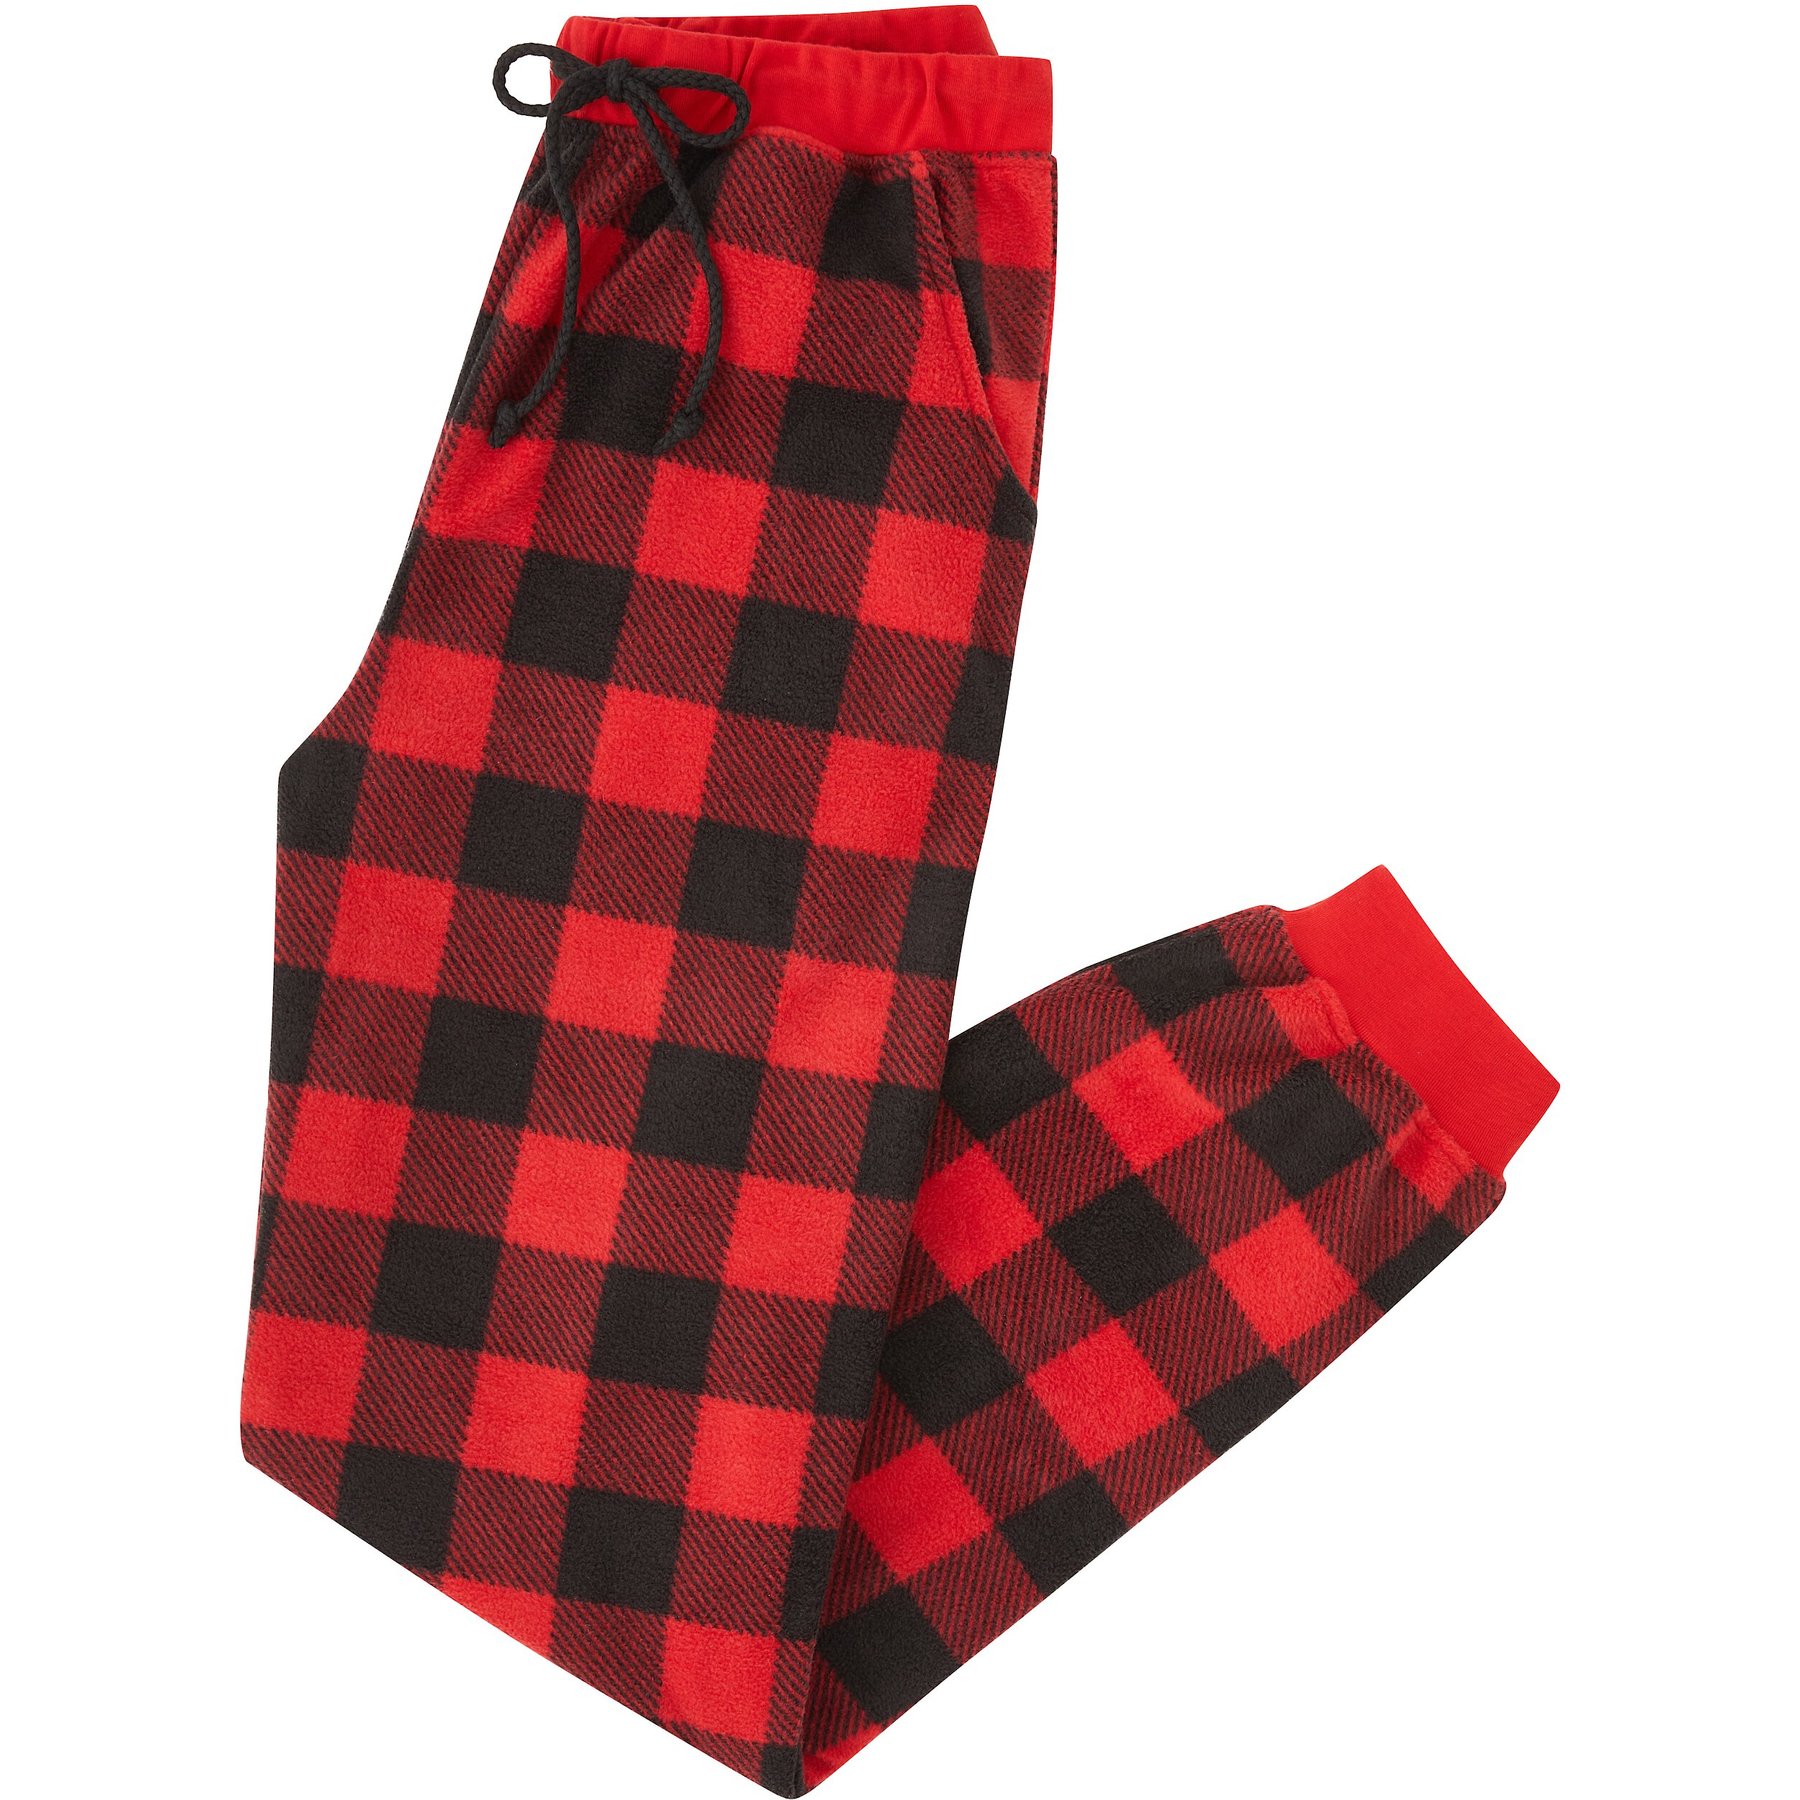 Men Red and Black Buffalo Plaid Pajama Pants, Polar Fleece Christmas Pajama  Pants with Pockets, Waistband Cord